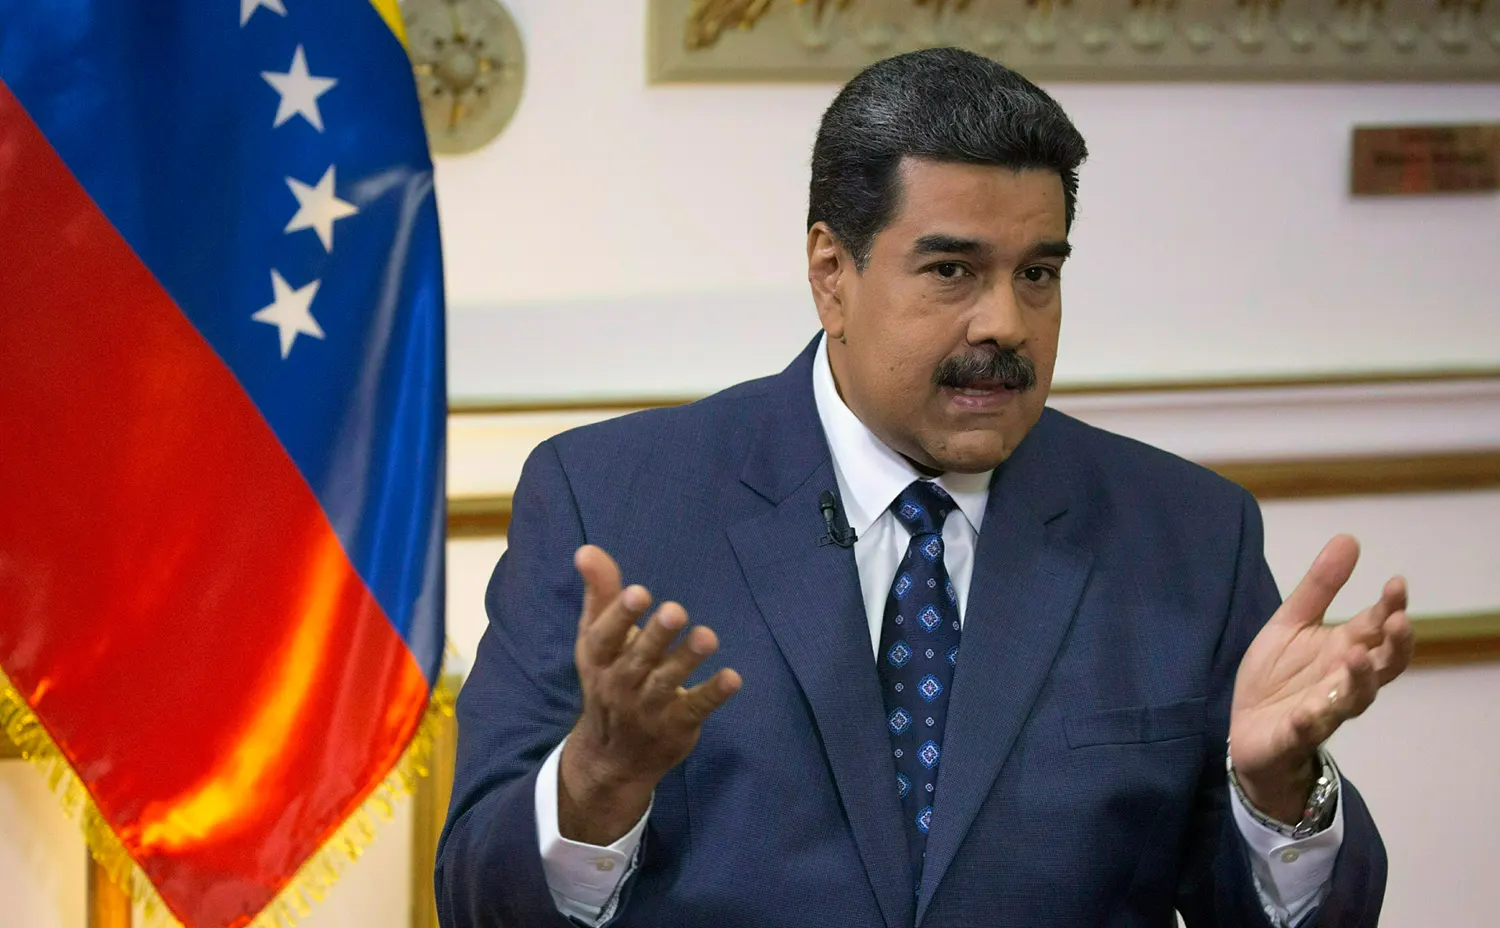 Кризис между Венесуэлой и Гайаной